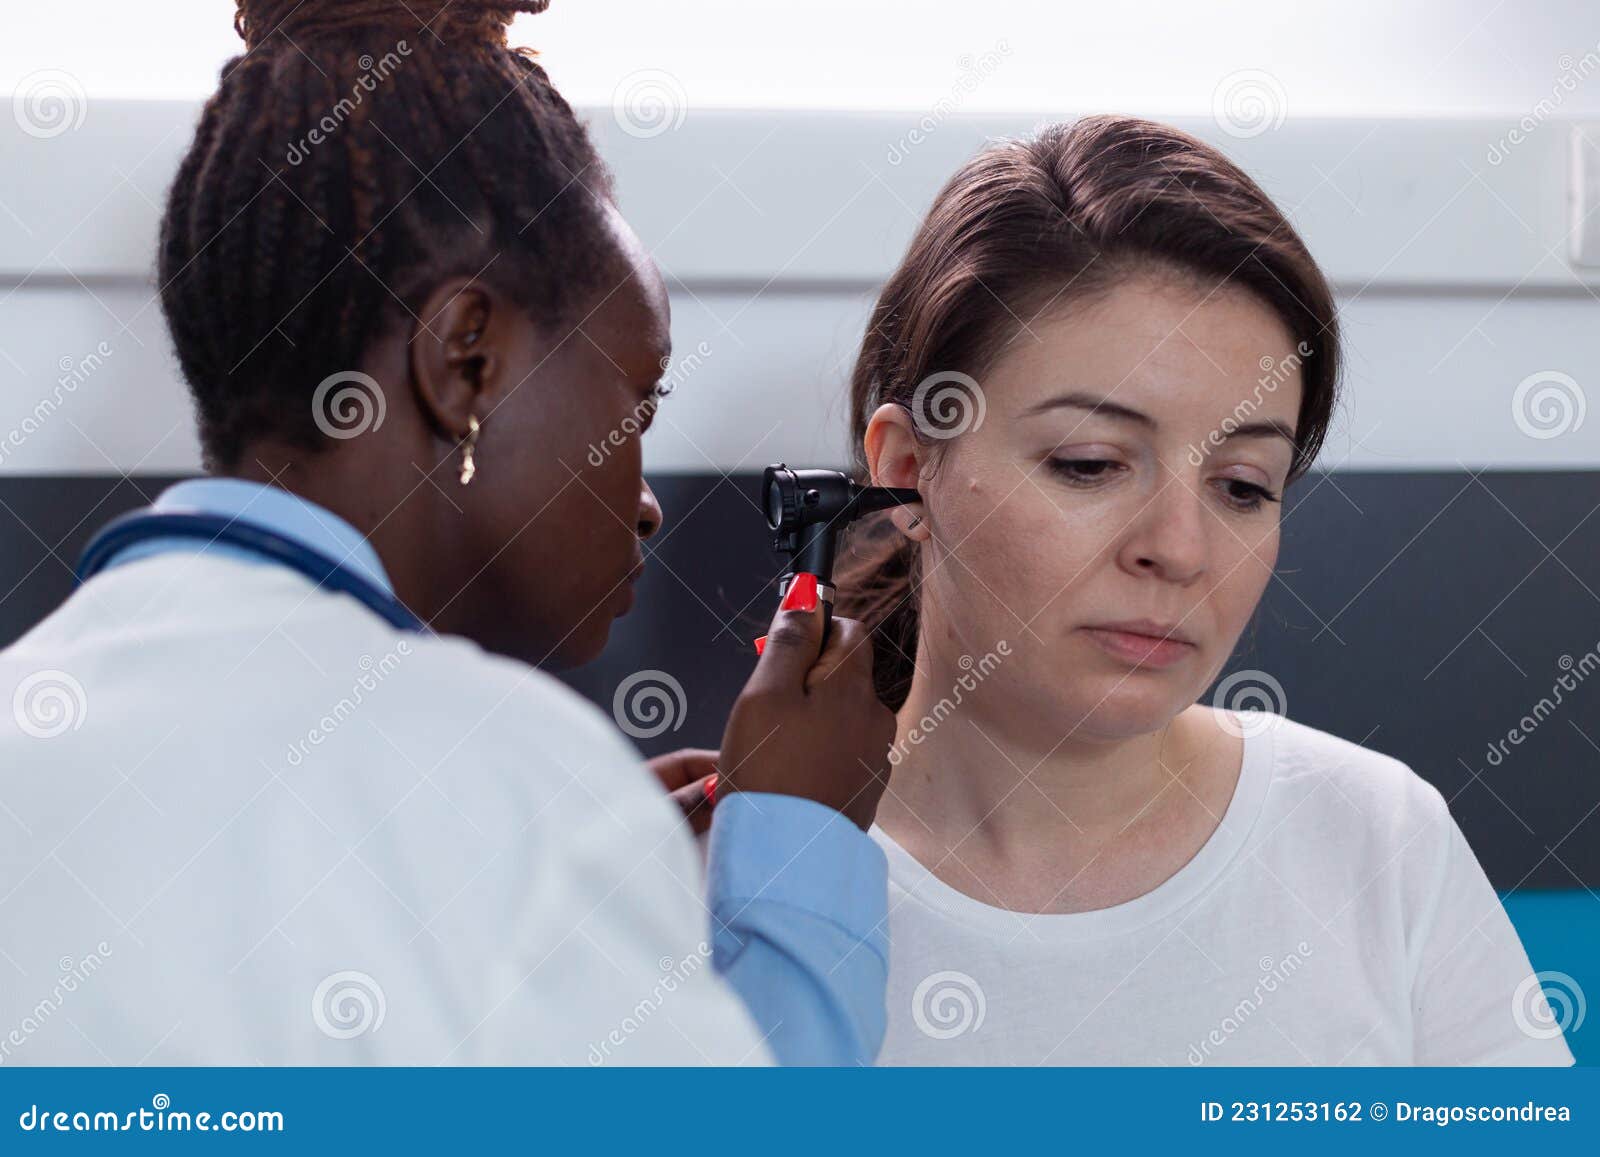 Docteur Utilisant L'otoscope Pour Vérifier L'oreille De La Femme